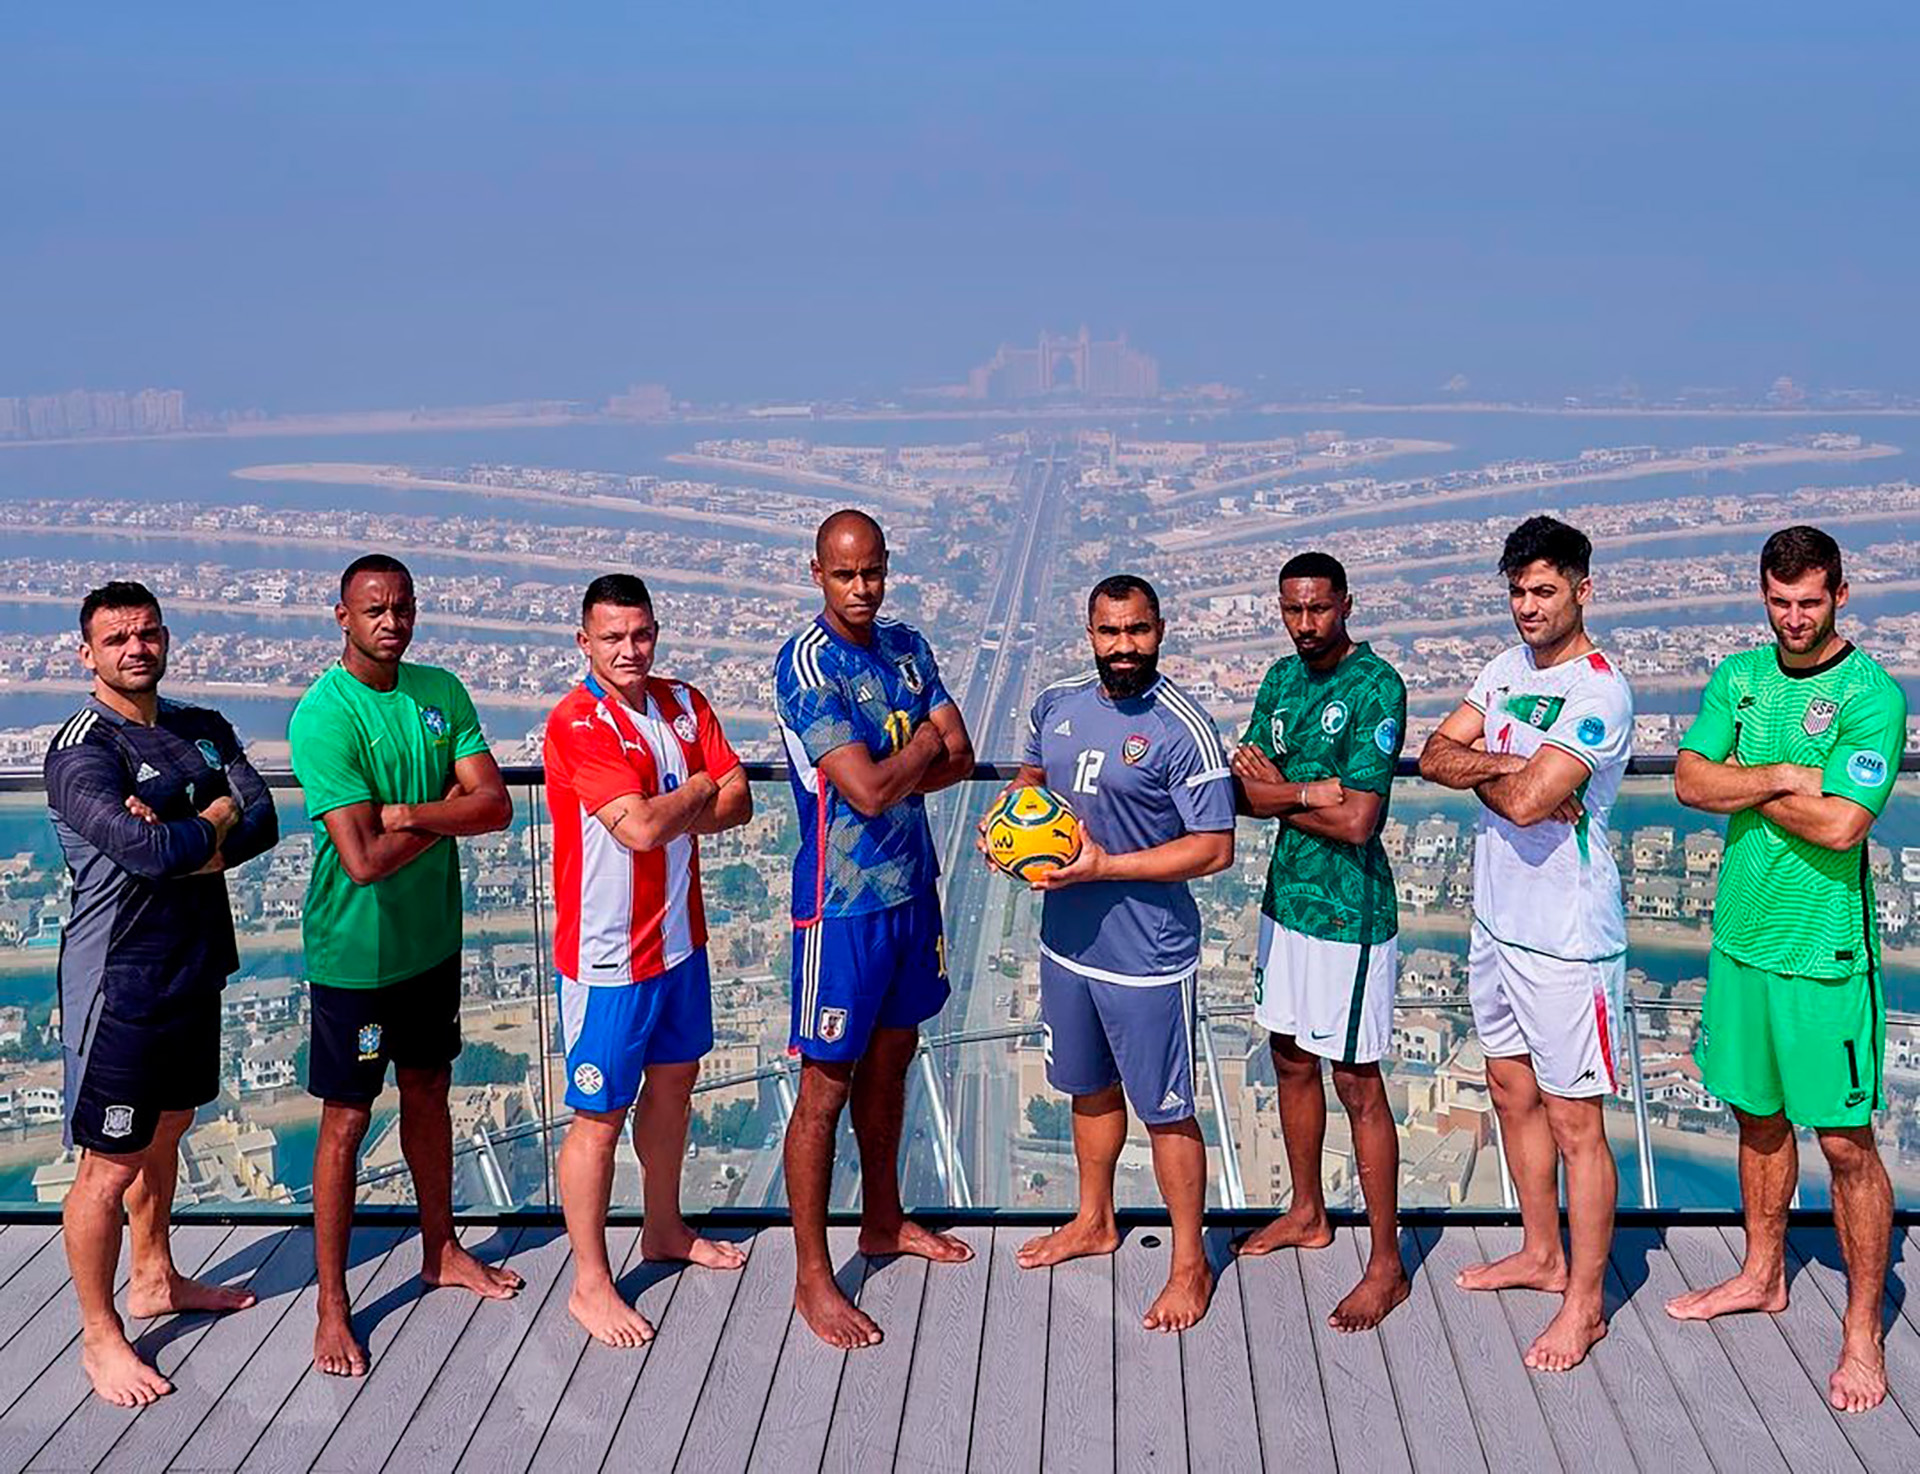 Ocho de los mejores equipos del mundo se enfrentaron en la Copa Intercontinental de Fútbol Playa de Dubái en noviembre con un fútbol puro en la zona del Golfo Pérsico.